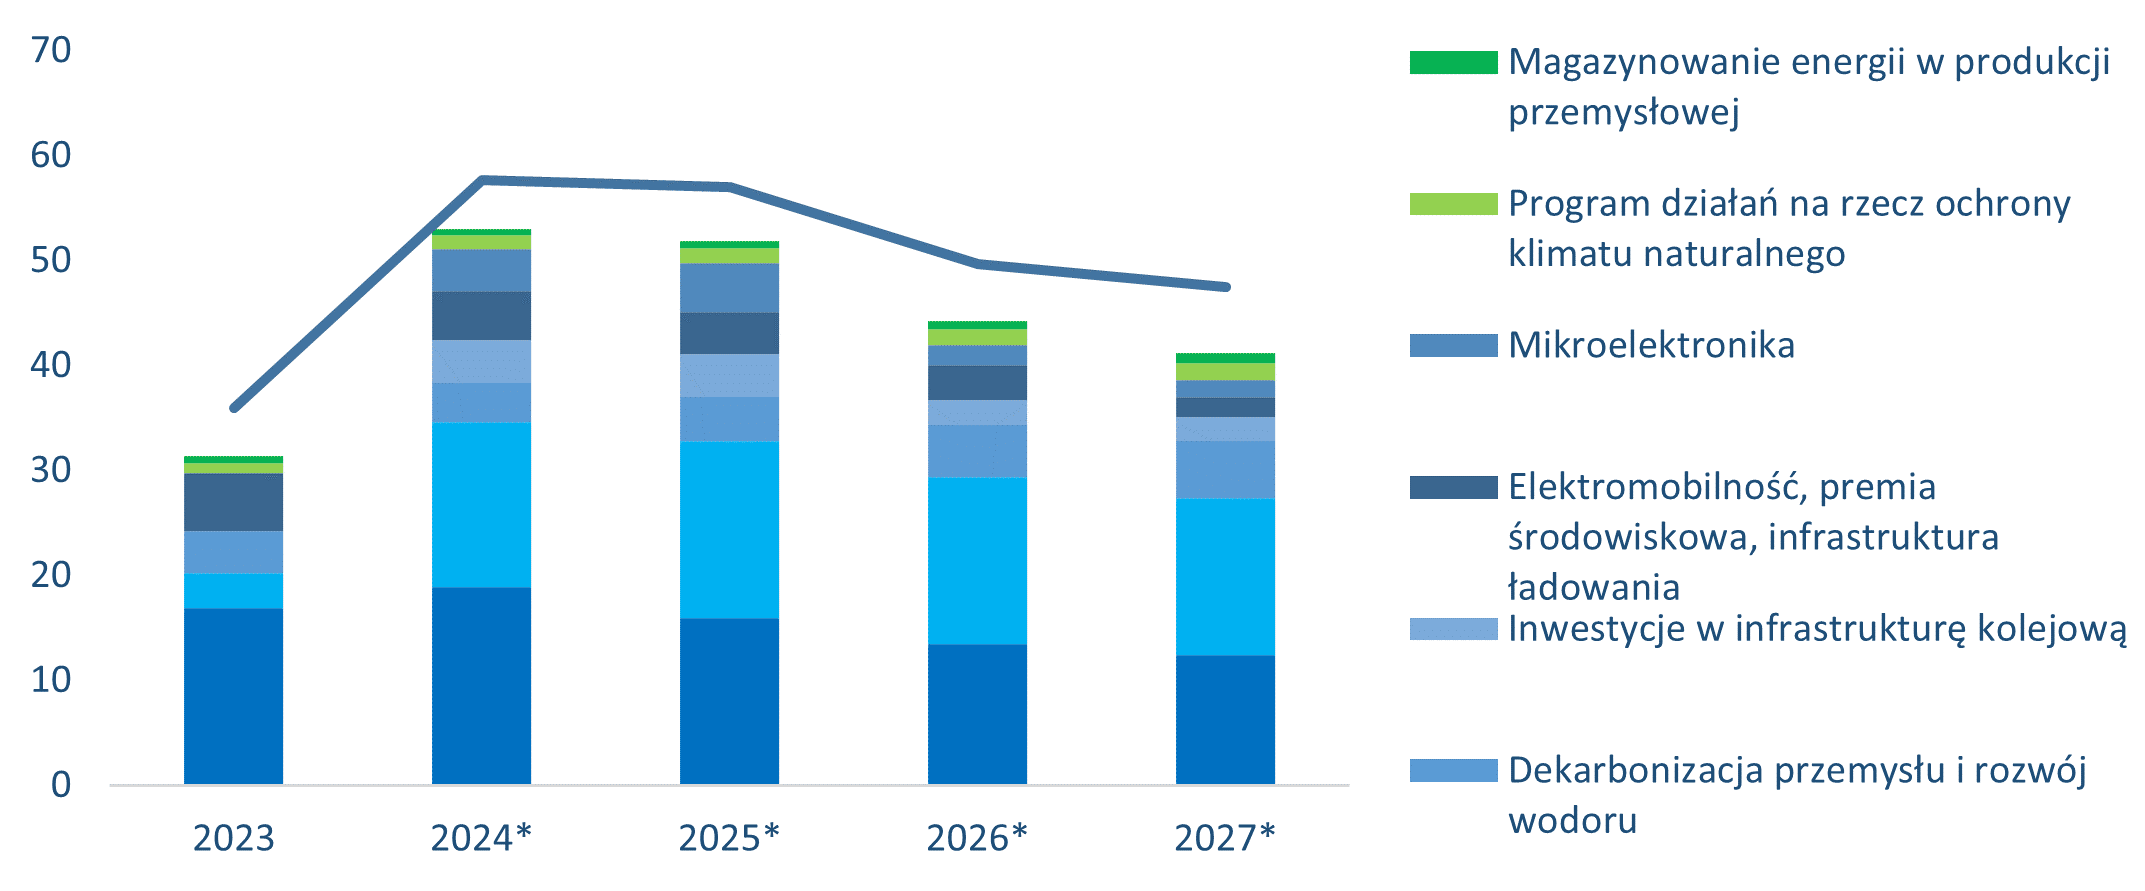 Wydatki programowe Funduszu na rzecz Klimatu i Transformacji w mld EUR w latach 2023-2027